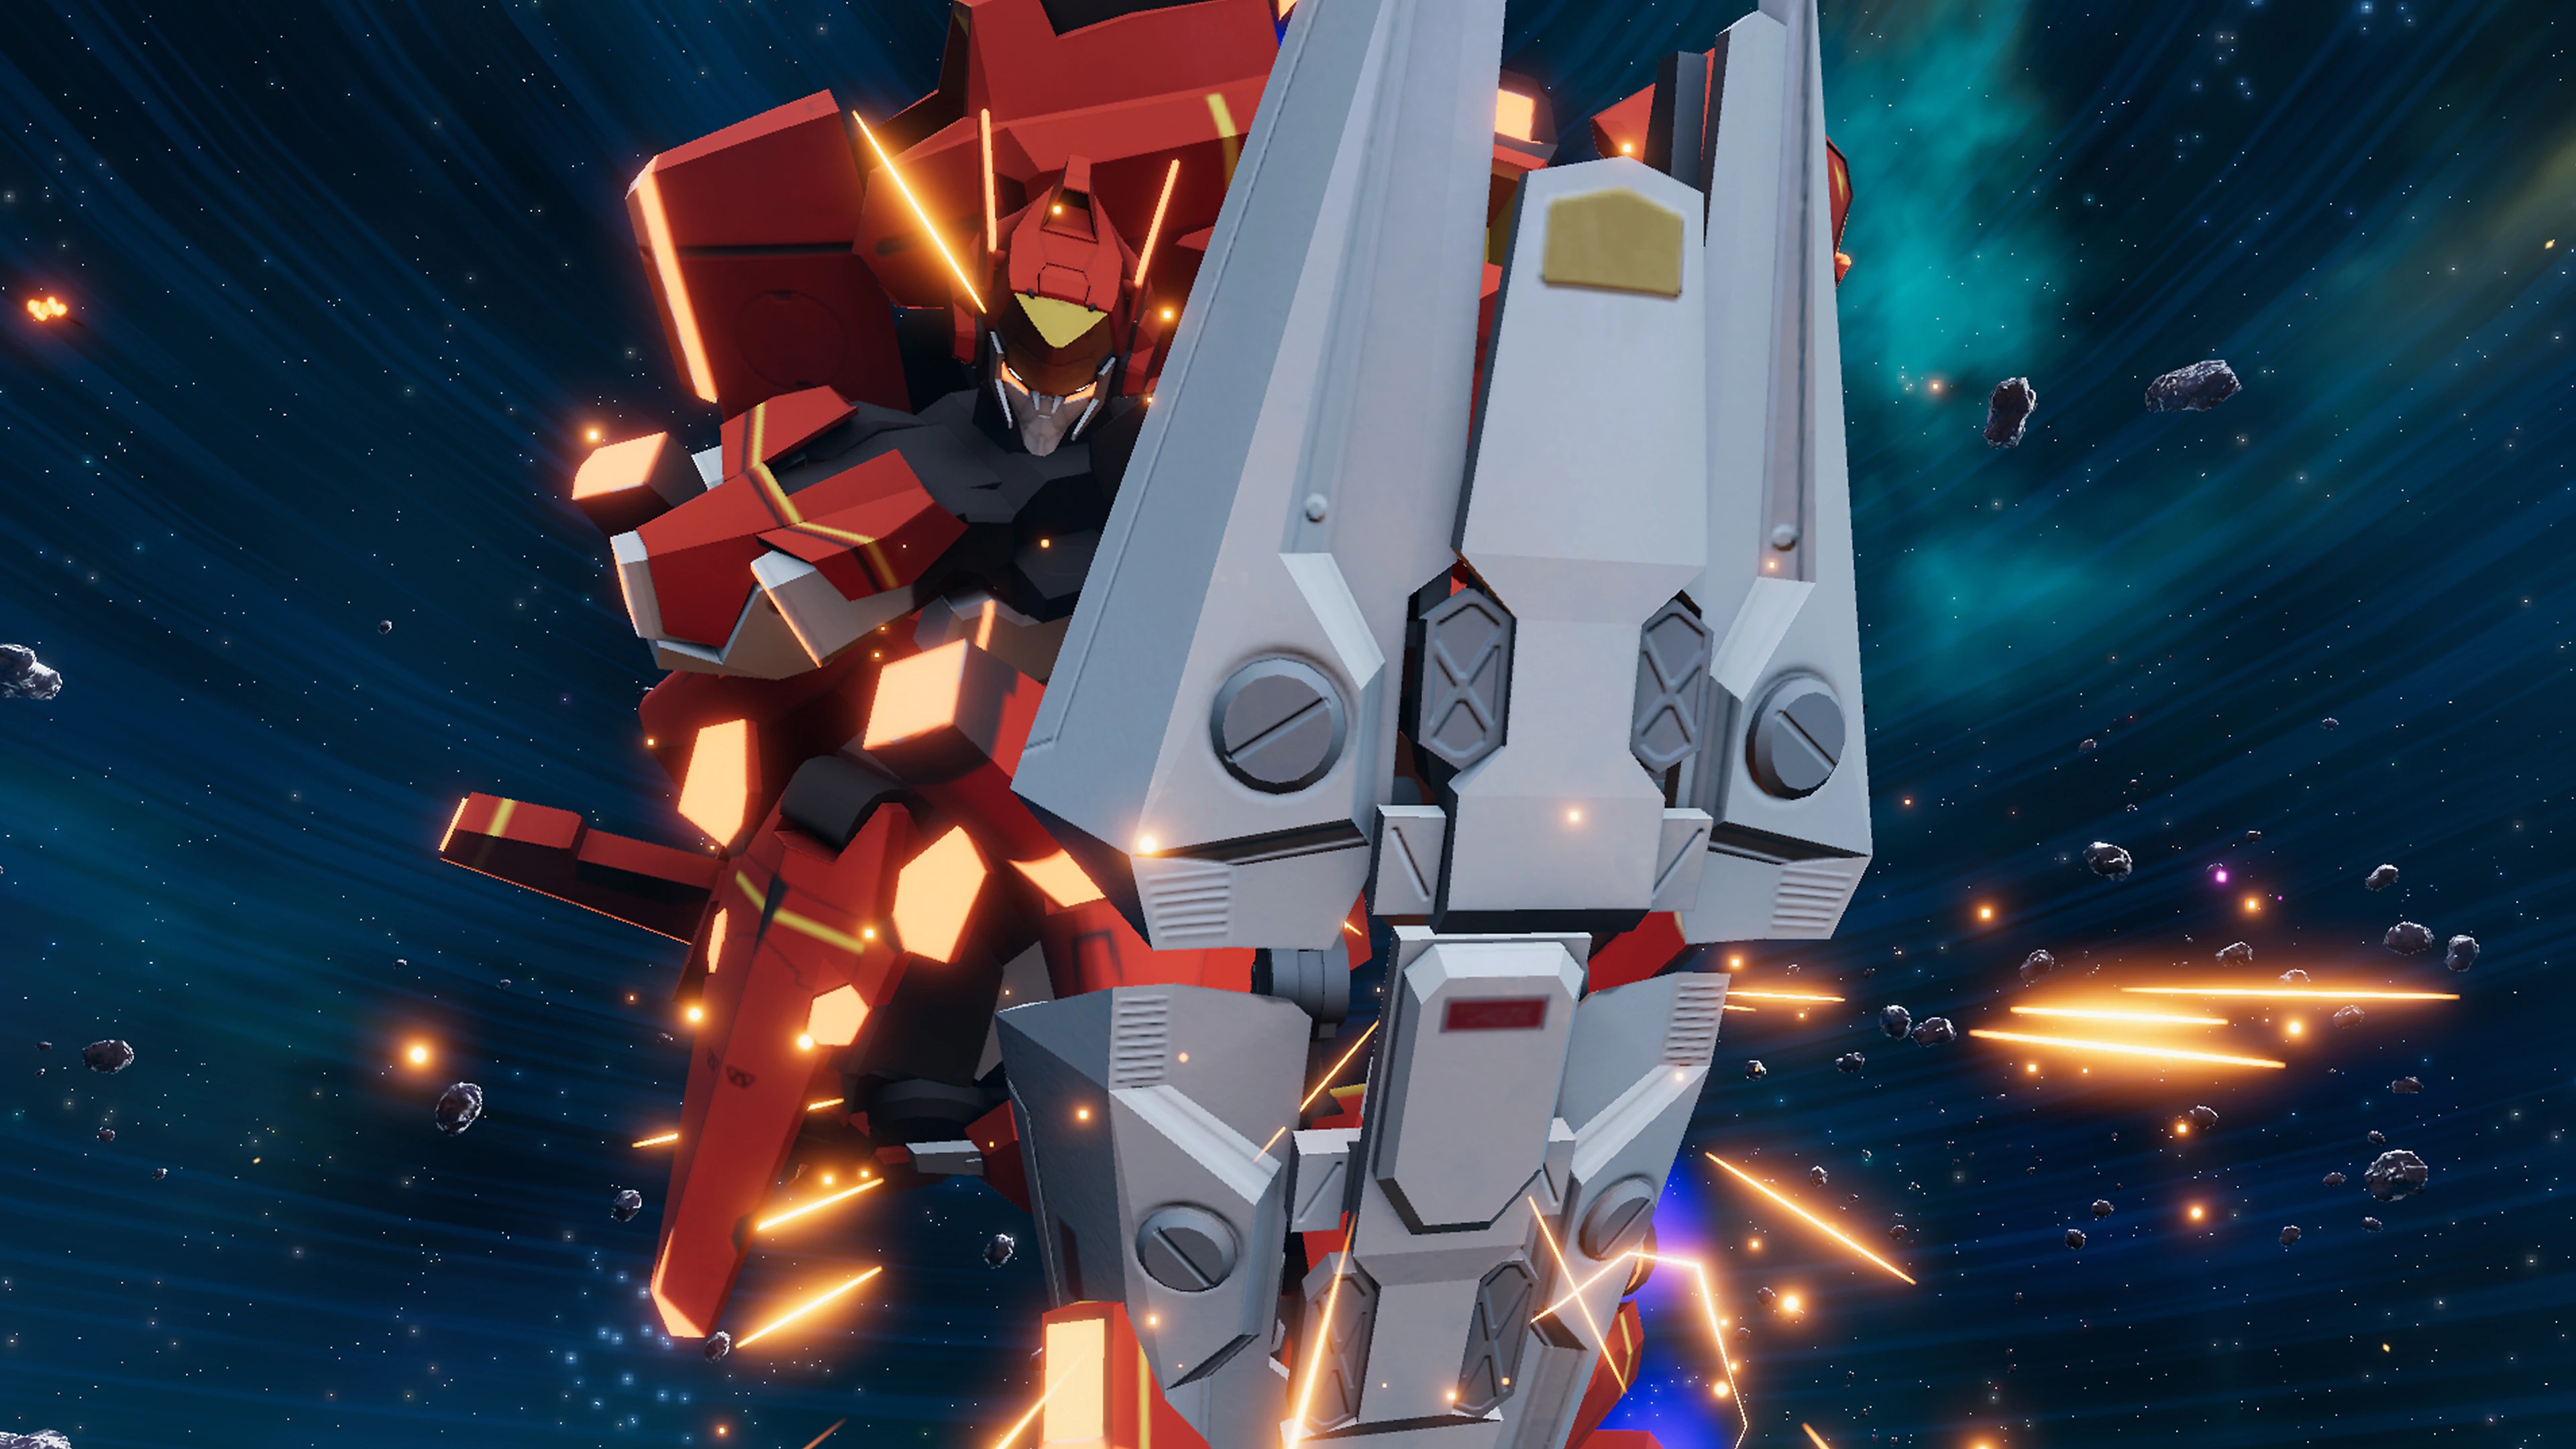 Relayer - Captura de tela exibindo um Relayer, um robô gigante com um escudo, voando pelo espaço